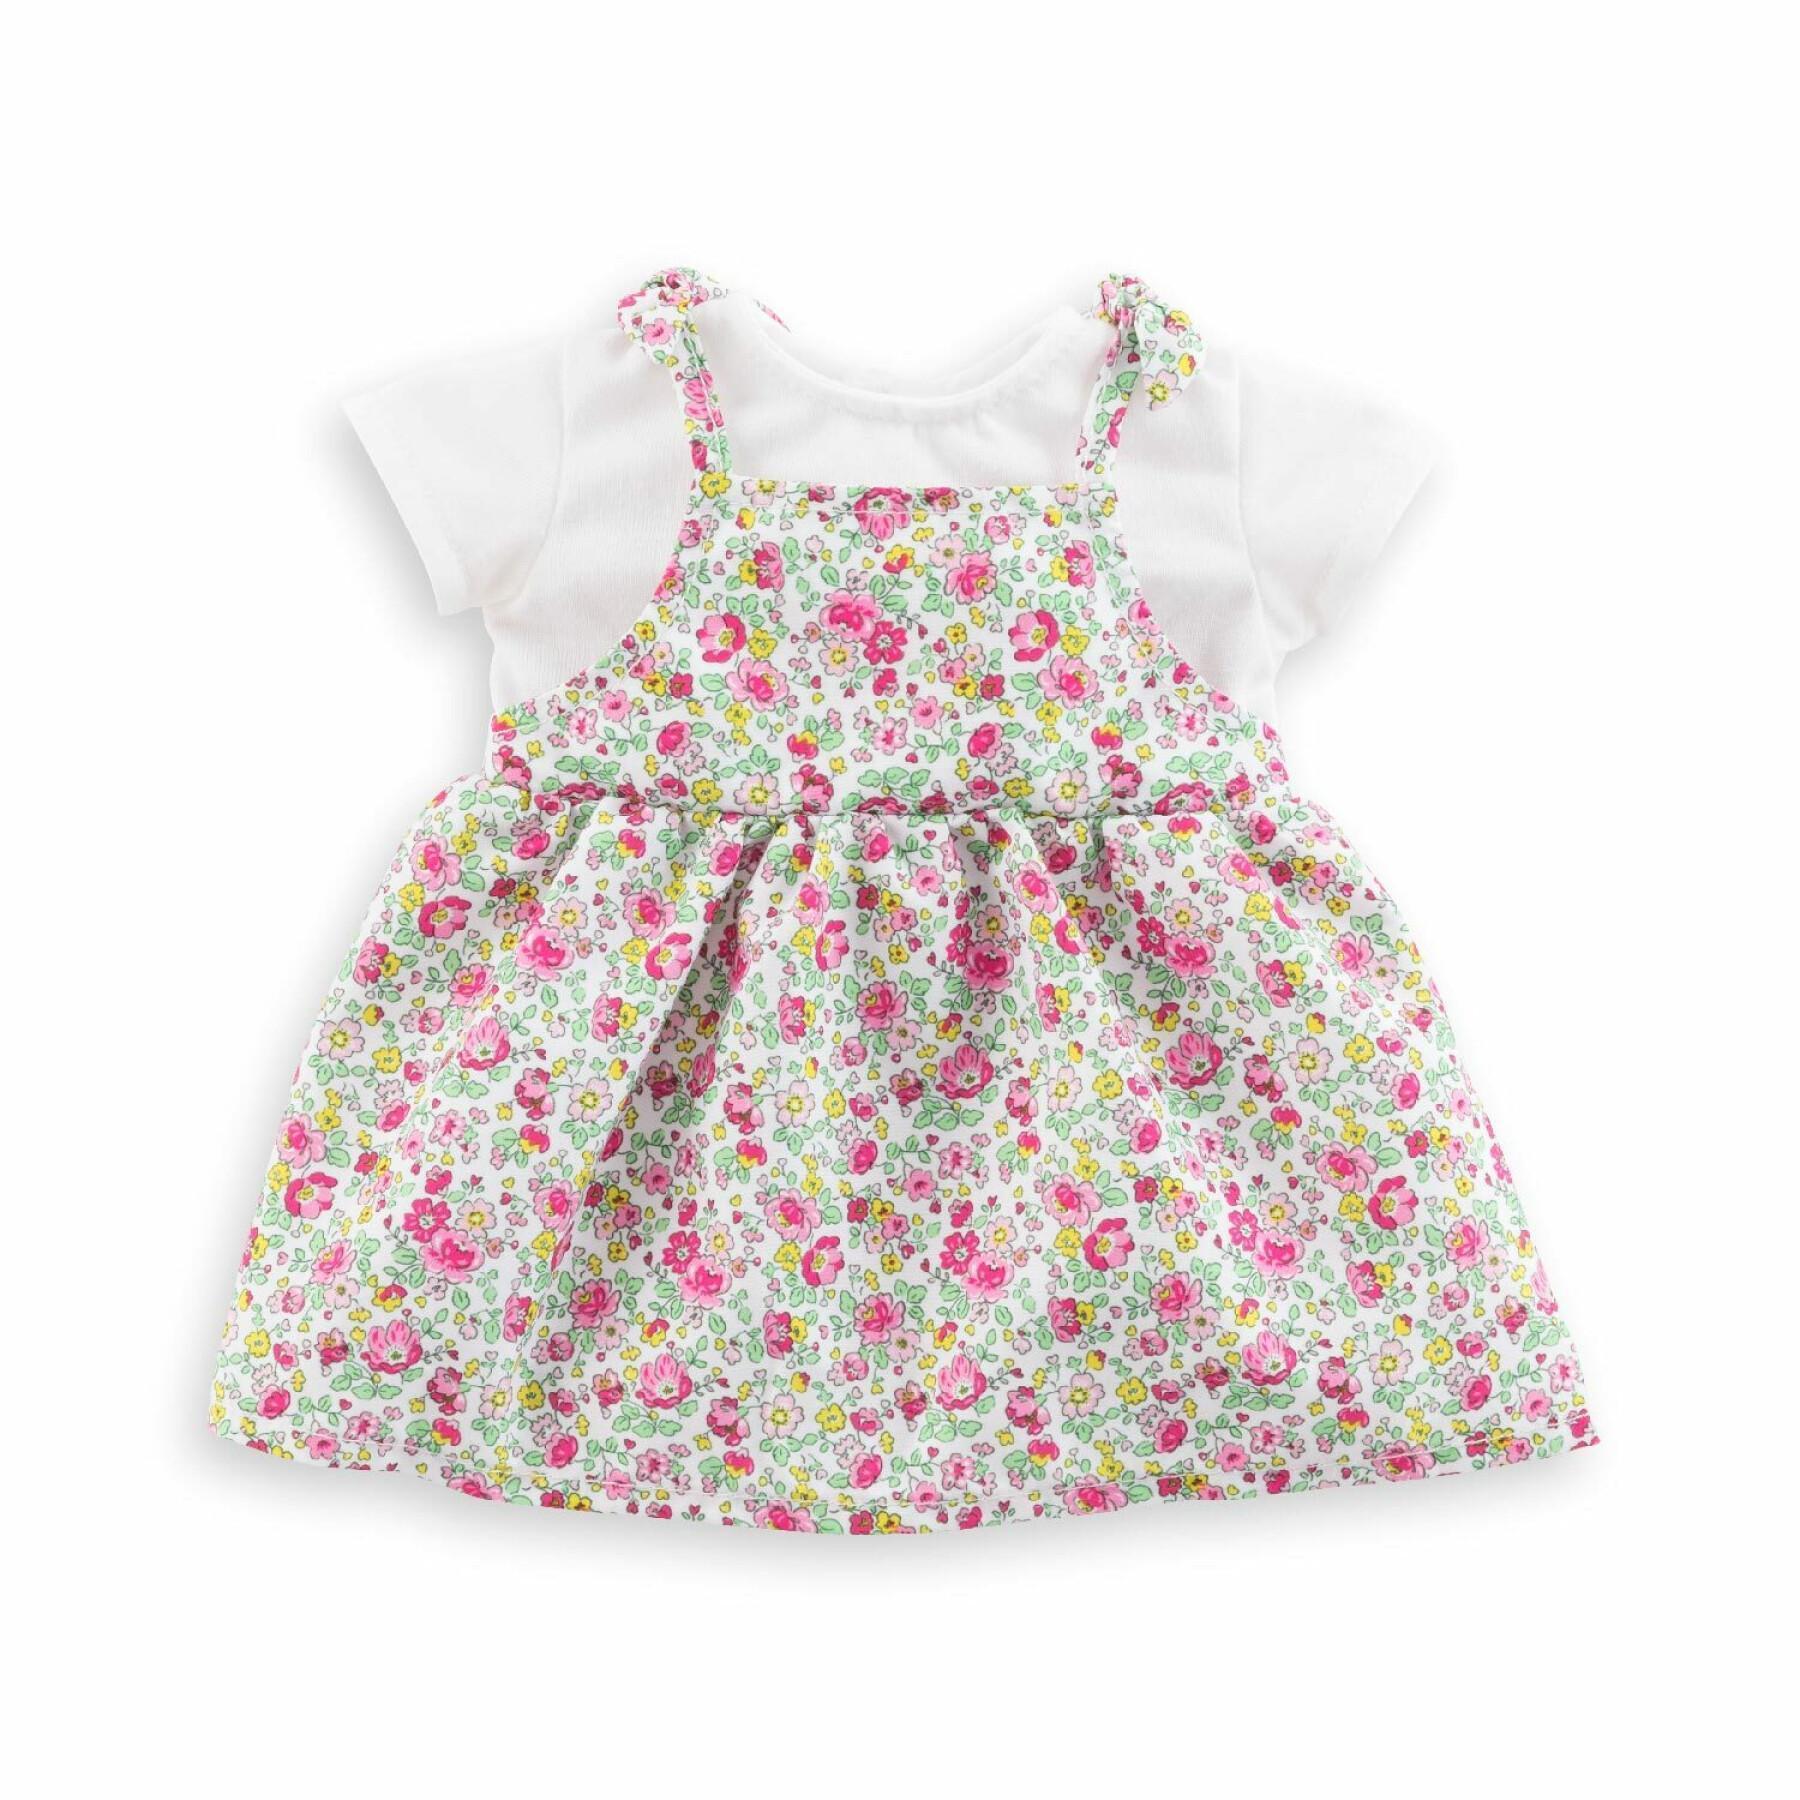 Flower garden dress for baby Corolle